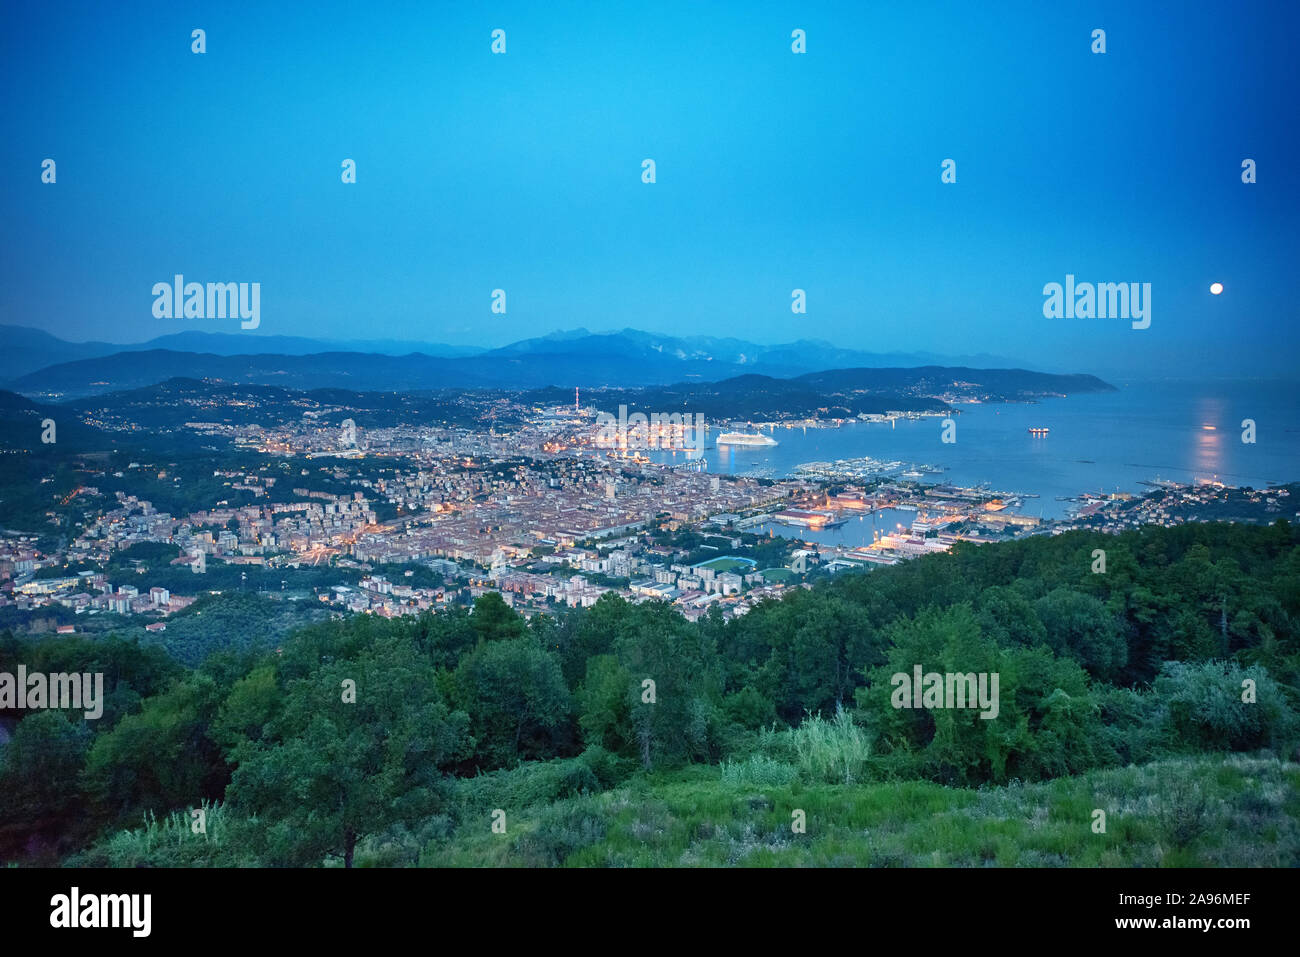 Vista in elevazione al golfo di La Spezia, Italia al tramonto con luci scintillanti diventando visibili nella città di seguito in un paesaggio panoramico Foto Stock